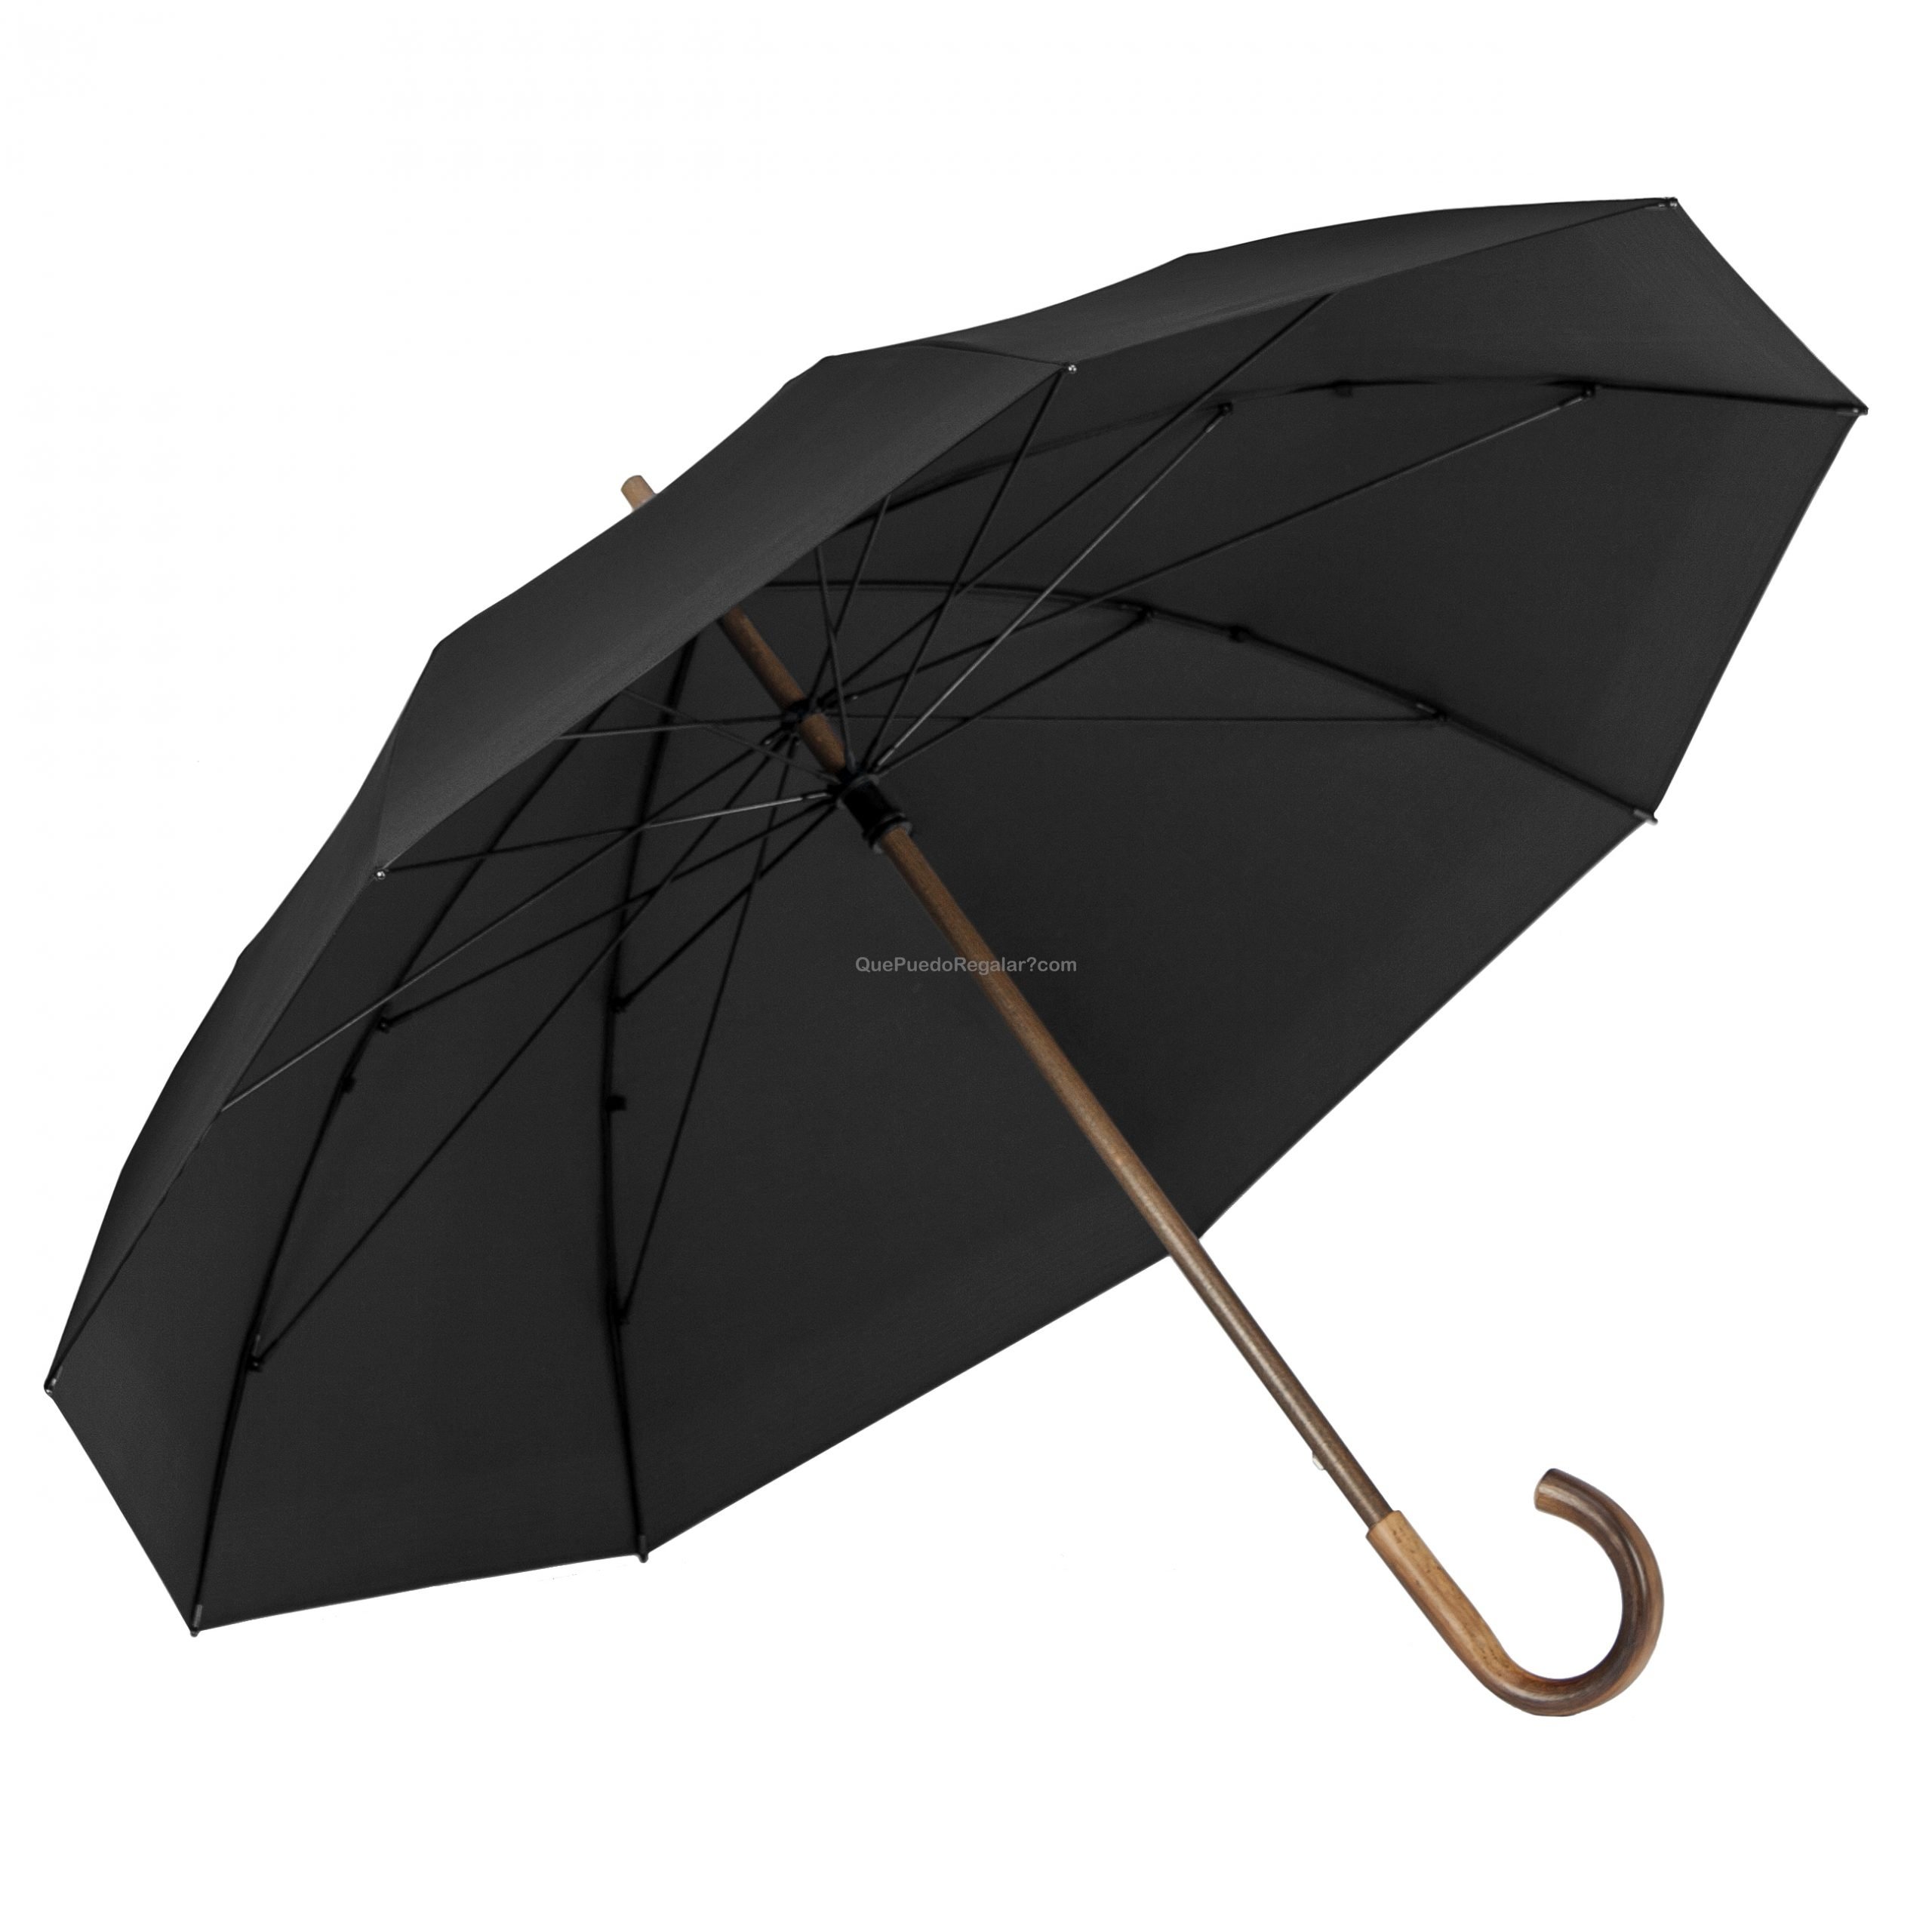 Paraguas pastor auténtico mango de madera (negro) - Paraguas largo Hombre, Paraguas Originales Que puedo Regalar